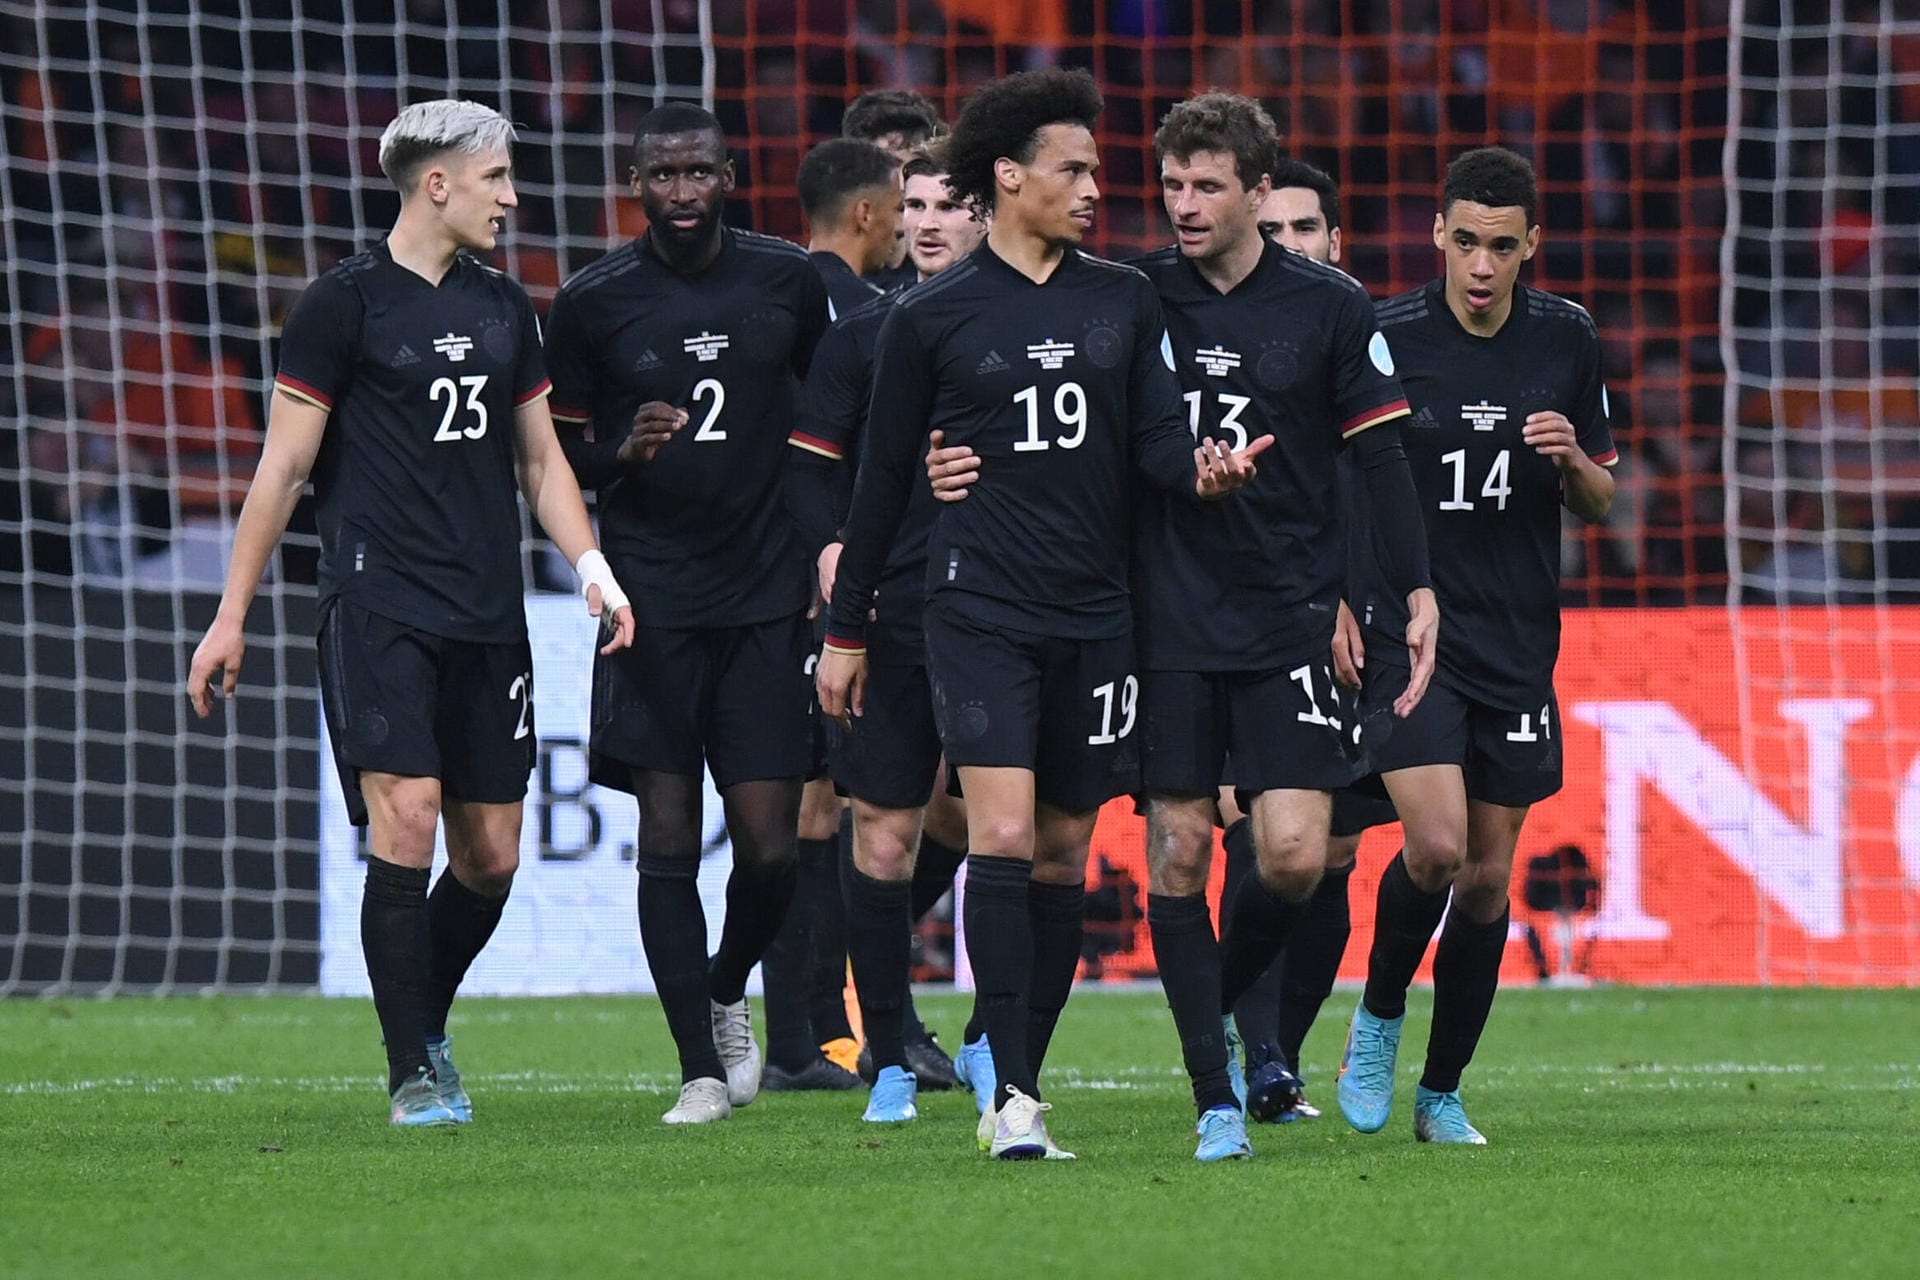 Unentschieden im "Klassiker" gegen die Niederlande. Beim 1:1 in Amsterdam kann ein DFB-Star voll überzeugen – ein anderer bleibt blass. Die Einzelkritik.